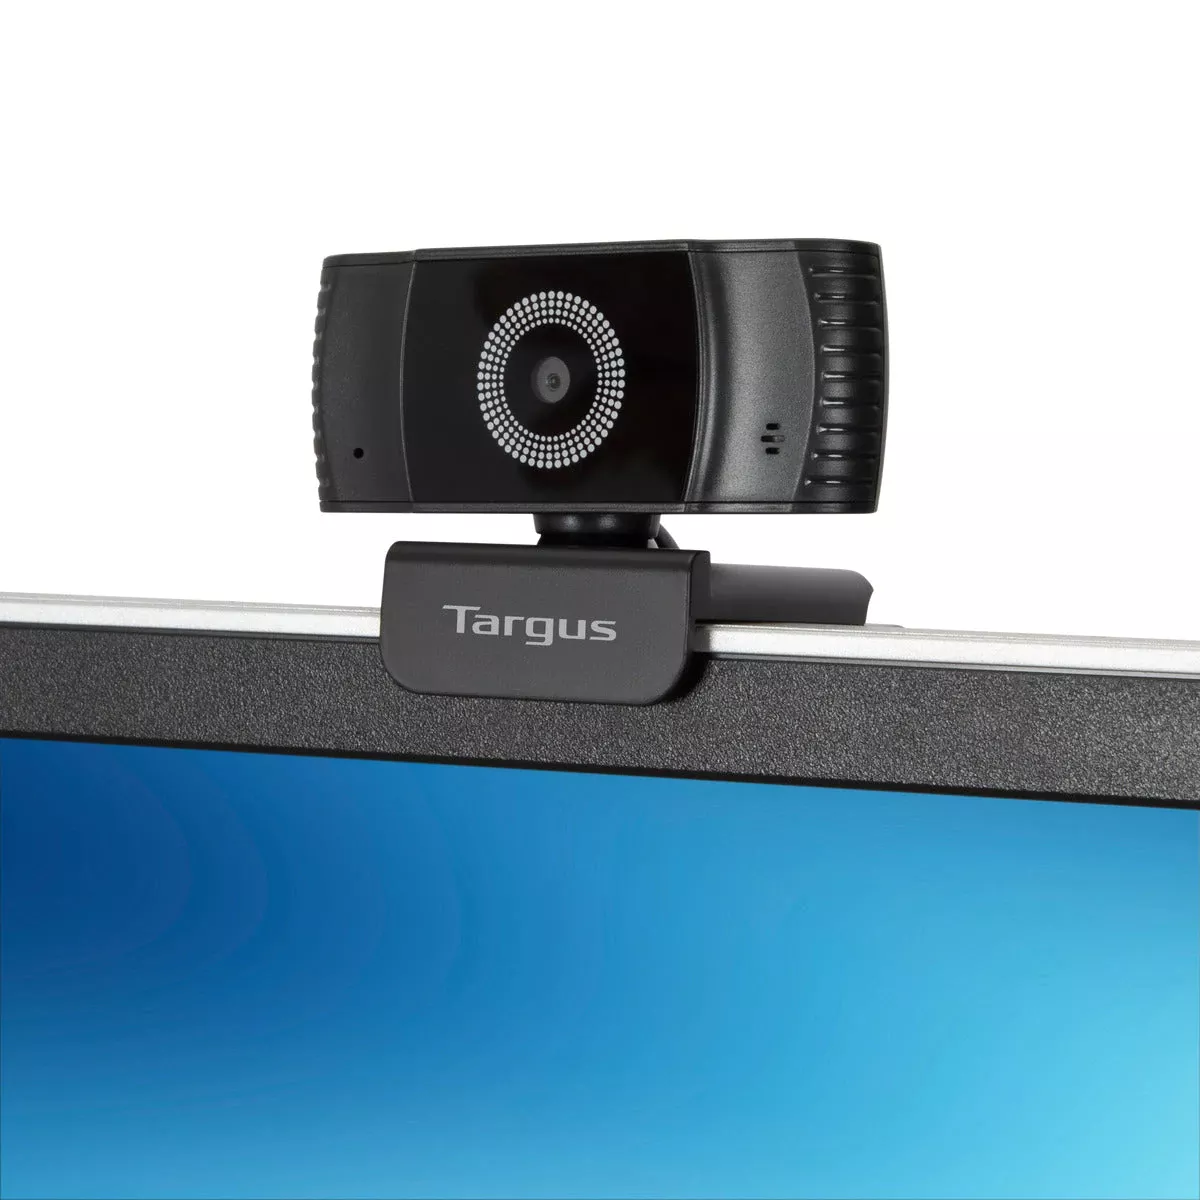 Vente TARGUS Webcam Plus Full HD 1080p Webcam with Targus au meilleur prix - visuel 2